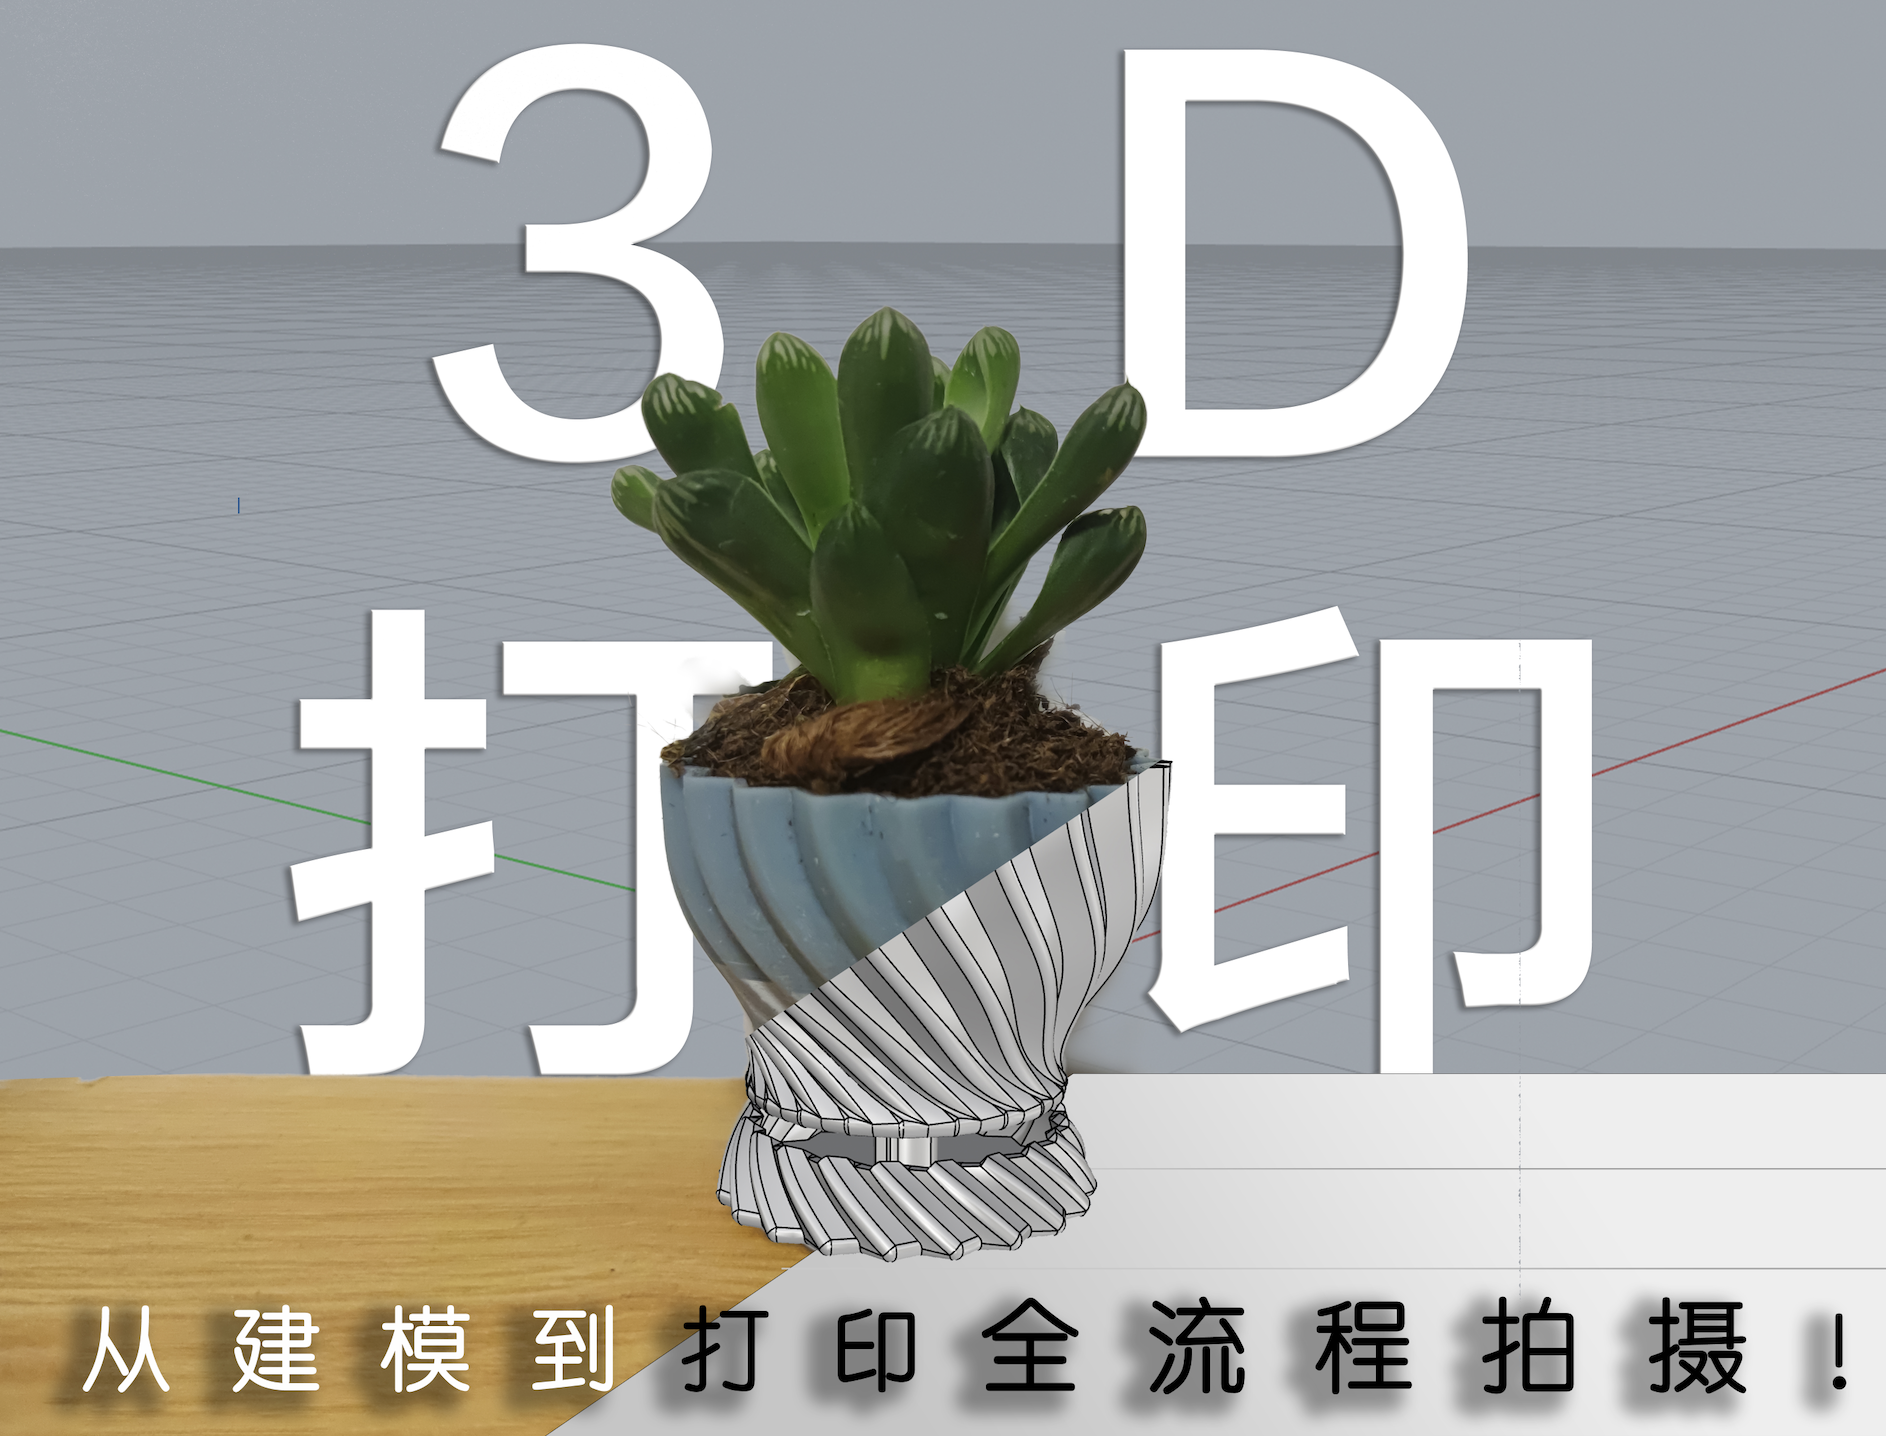 3D打印多肉花盆，全程录制